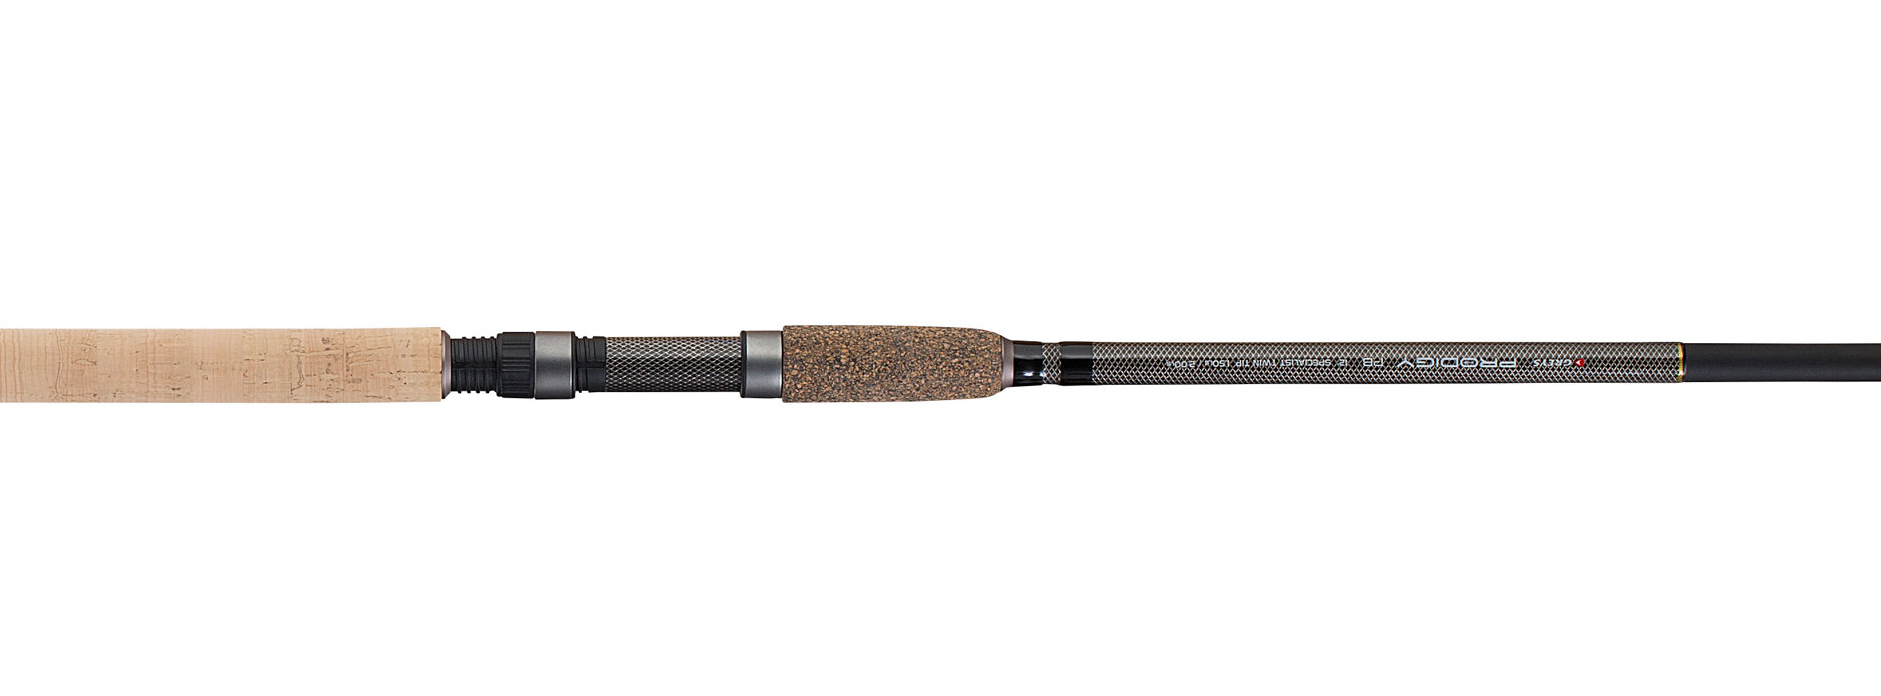 Greys Prodigy PB Barbel 12' 2.75lb Coarse Fishing Rod 